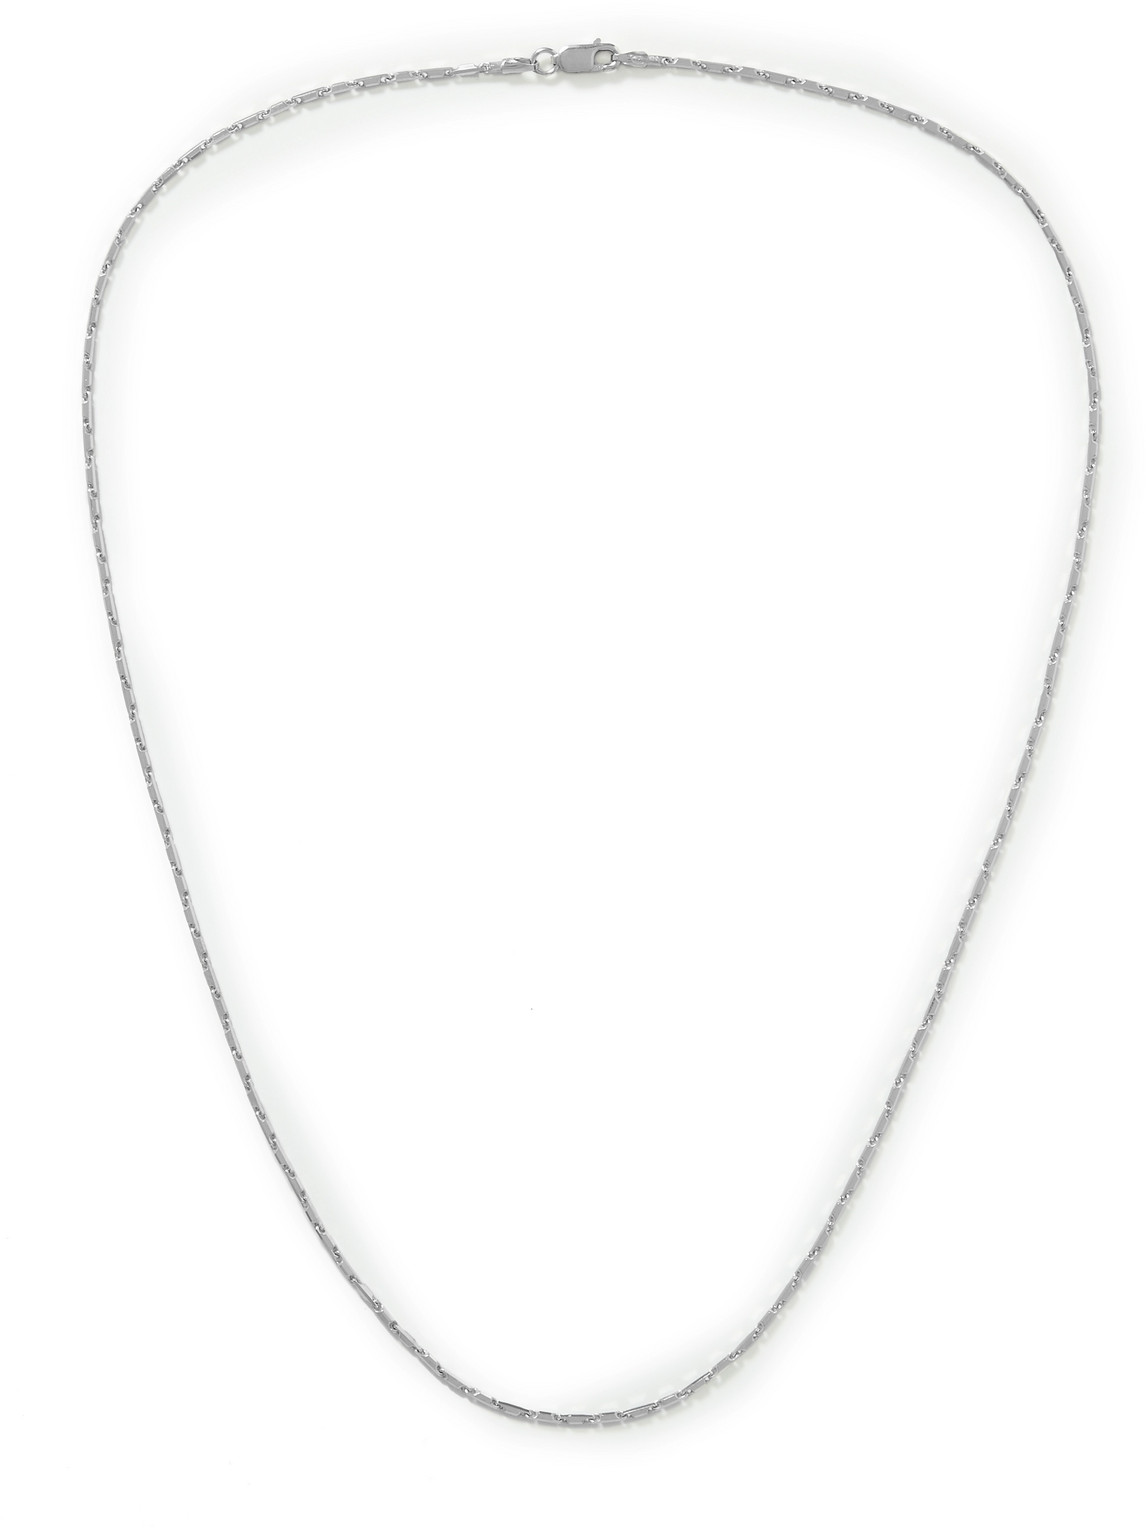 Miansai Cardano Sterling Silver Chain Necklace